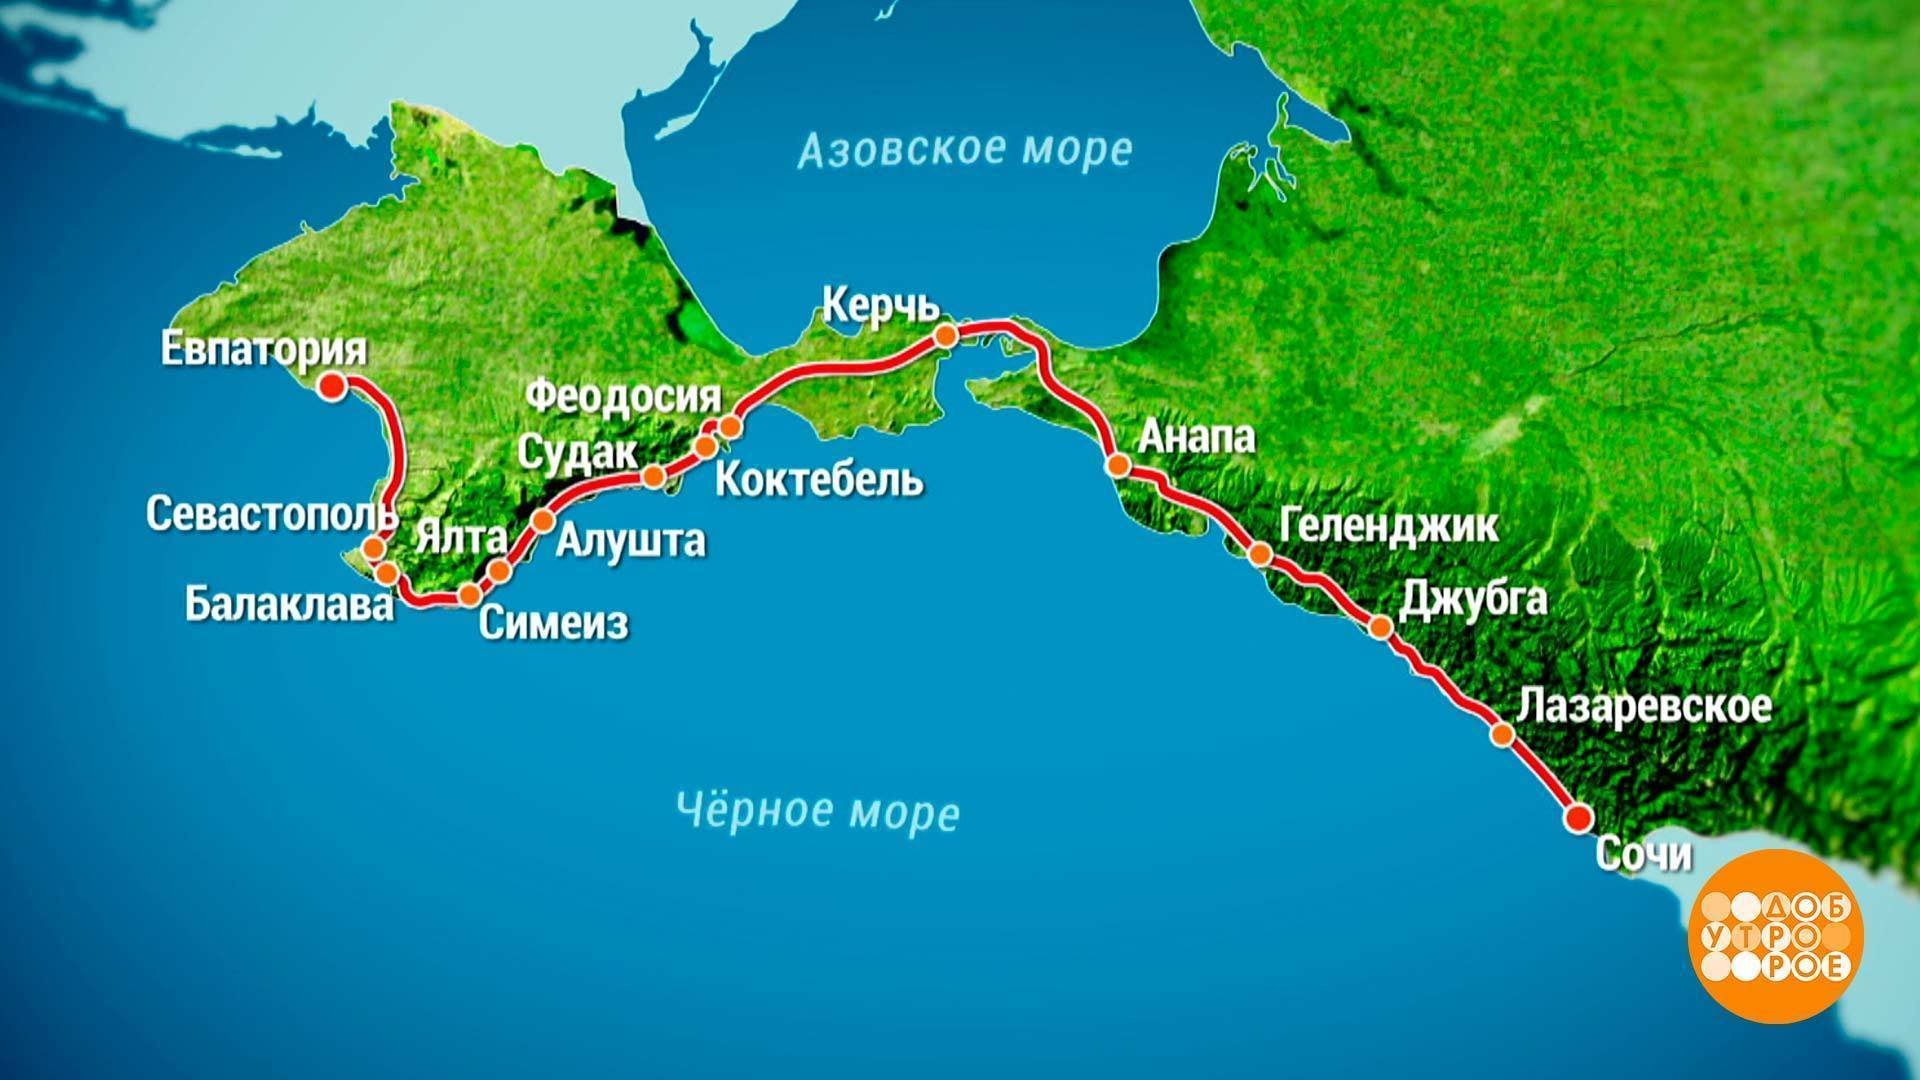 Границы черноморского побережья